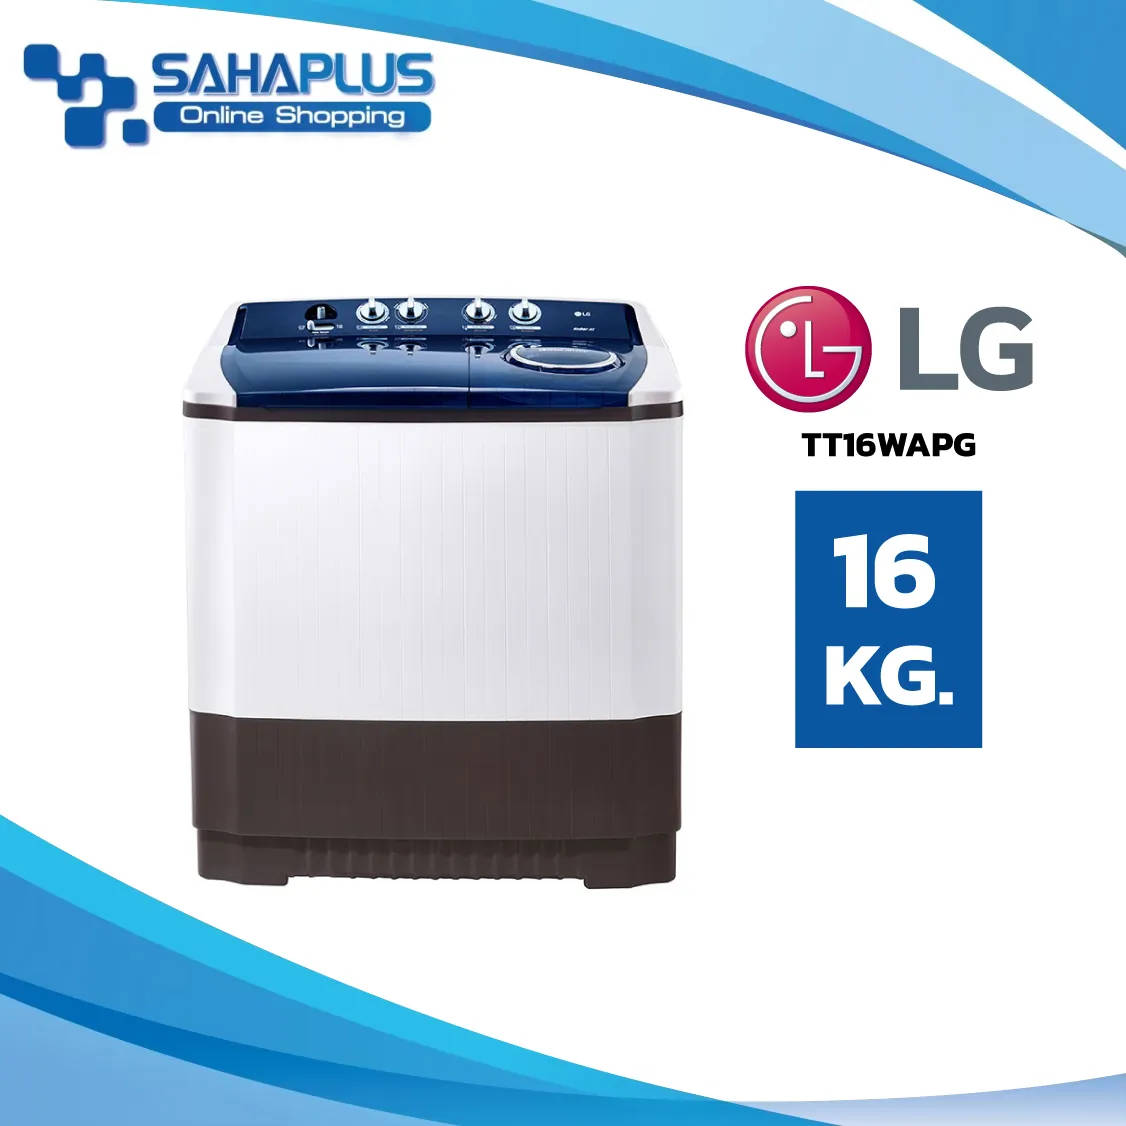 เครื่องซักผ้า 2 ถัง LG รุ่นใหม่ TT16WAPG ขนาด 16 KG (รับประกันนาน 5 ปี)